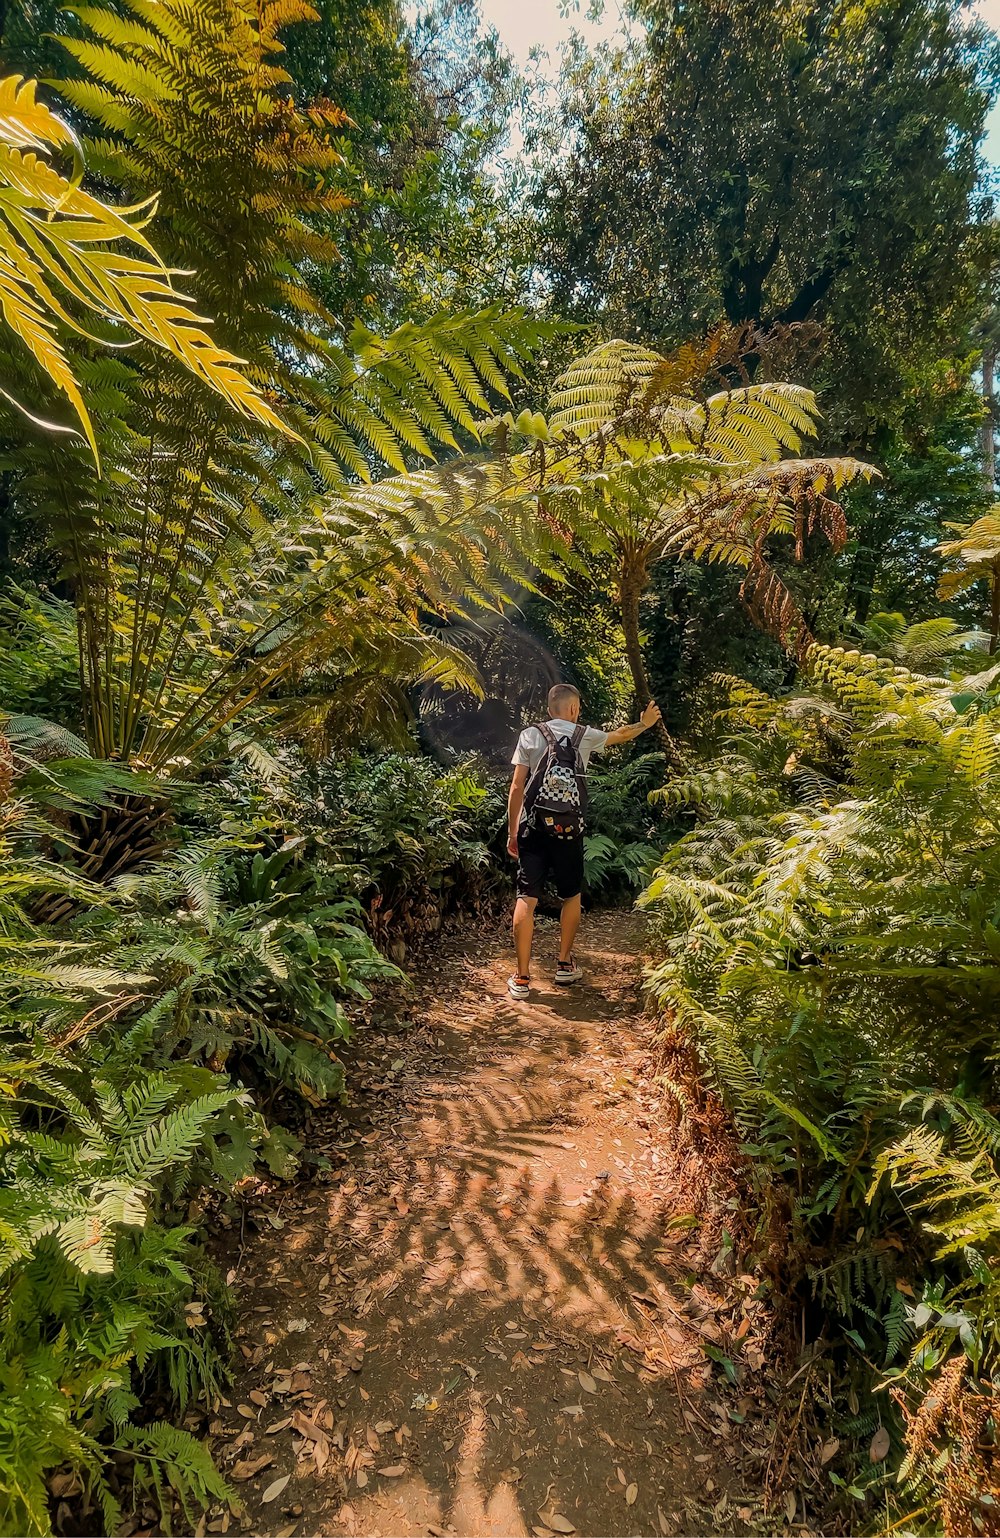 a man walking down a dirt path through a lush green forest